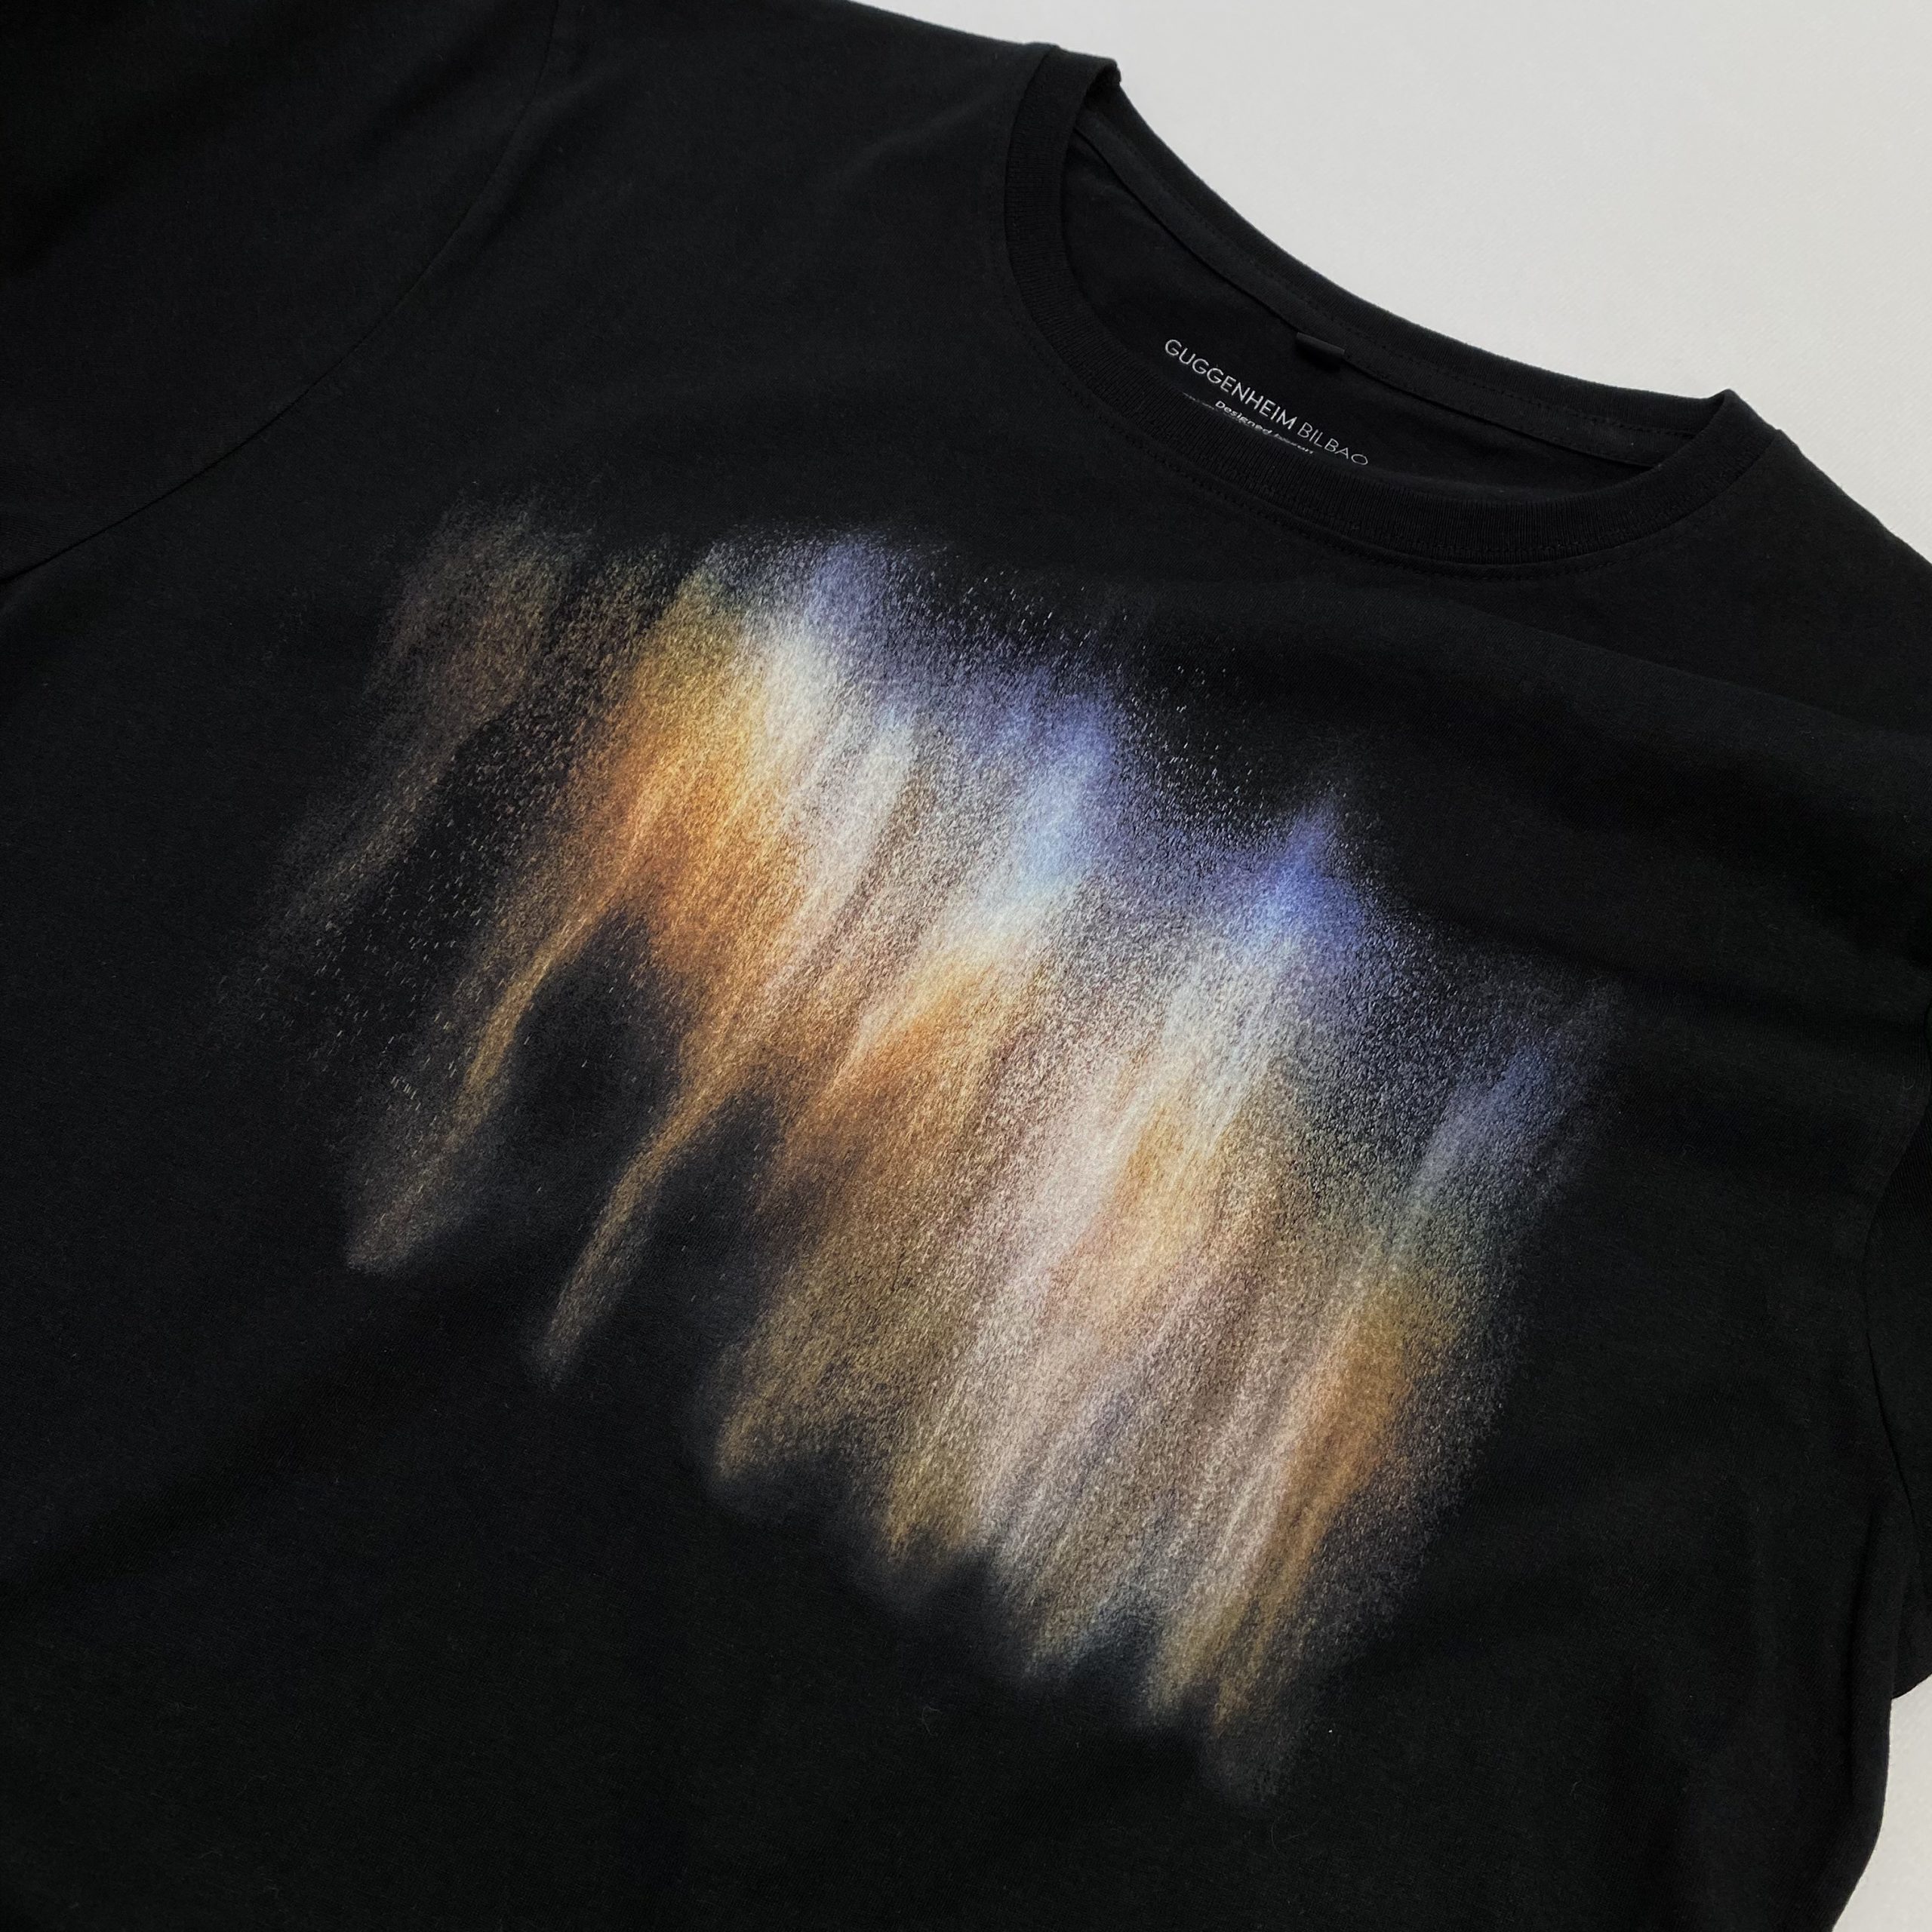 T-Shirt Printing – Tate/Guggenheim